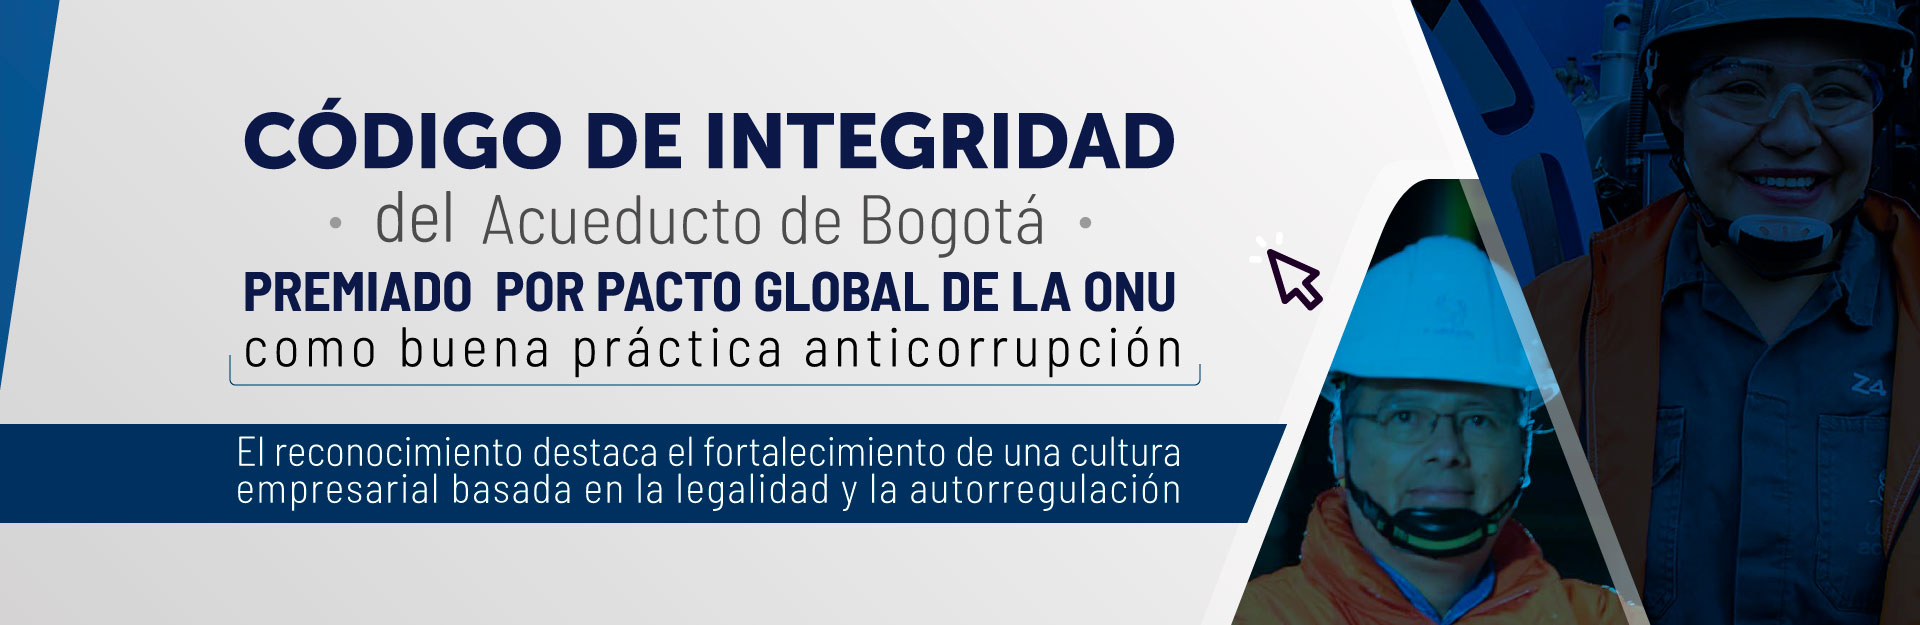 Código de Integridad del Acueducto de Bogotá premiado por Pacto Global de la ONU como buena práctica anticorrupción